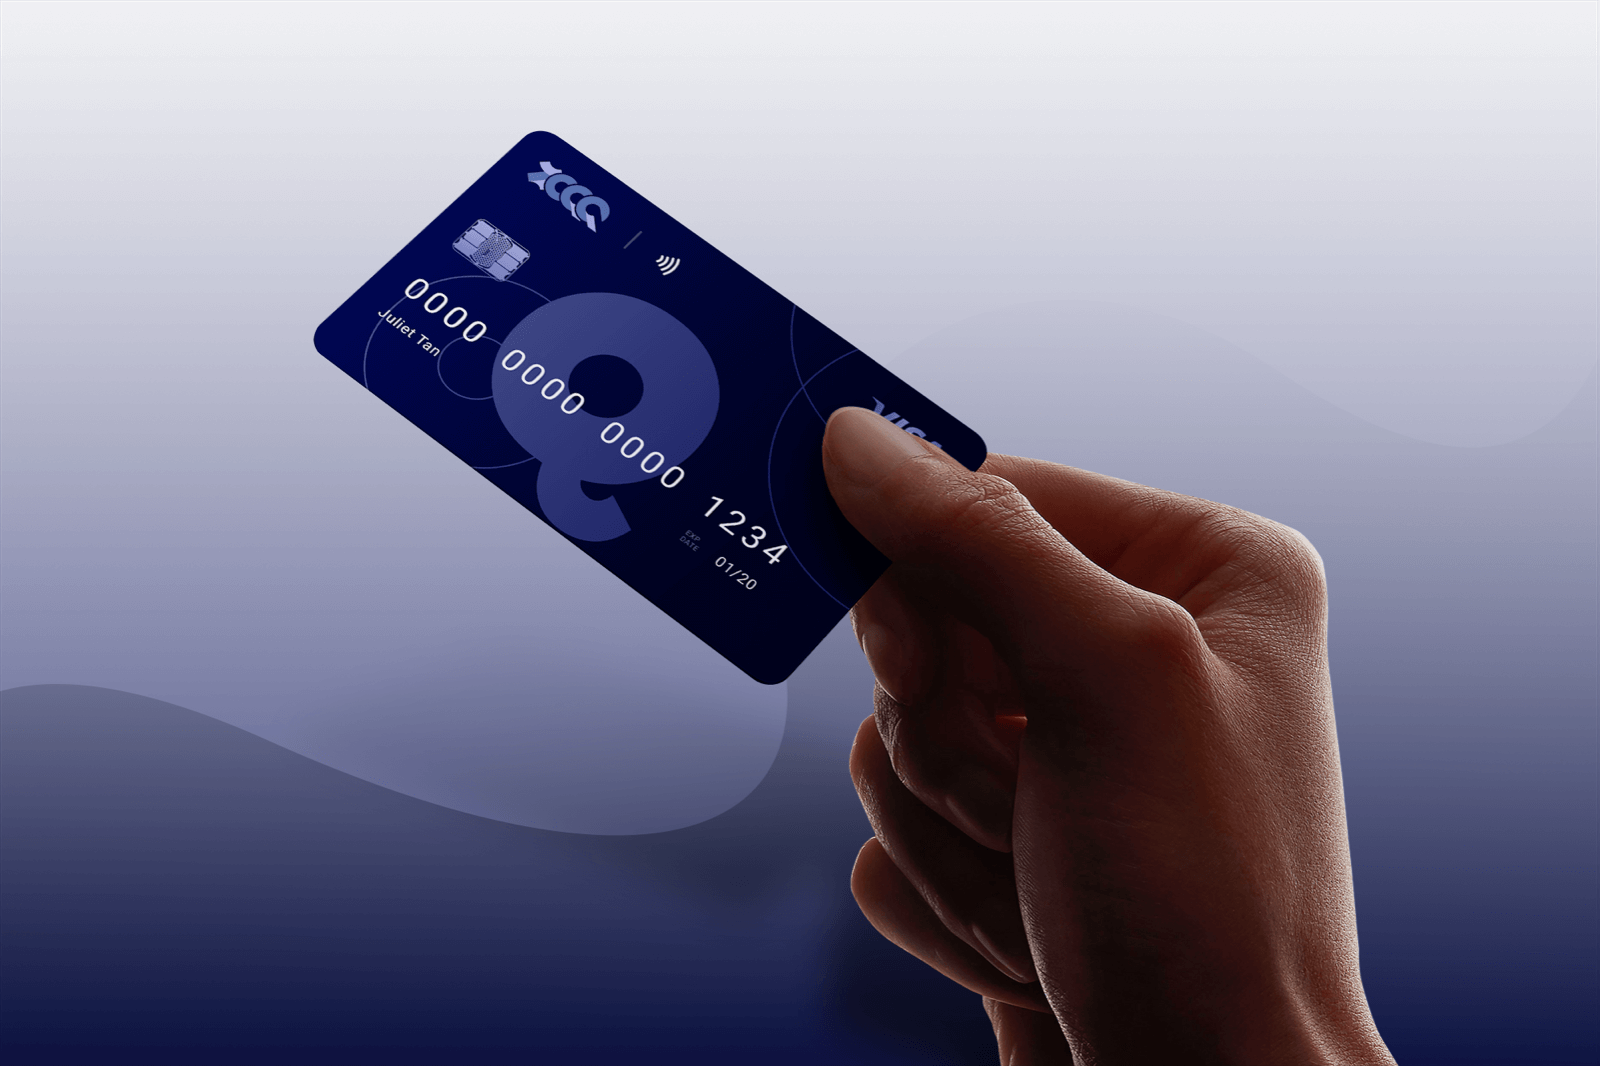 prepaidcard